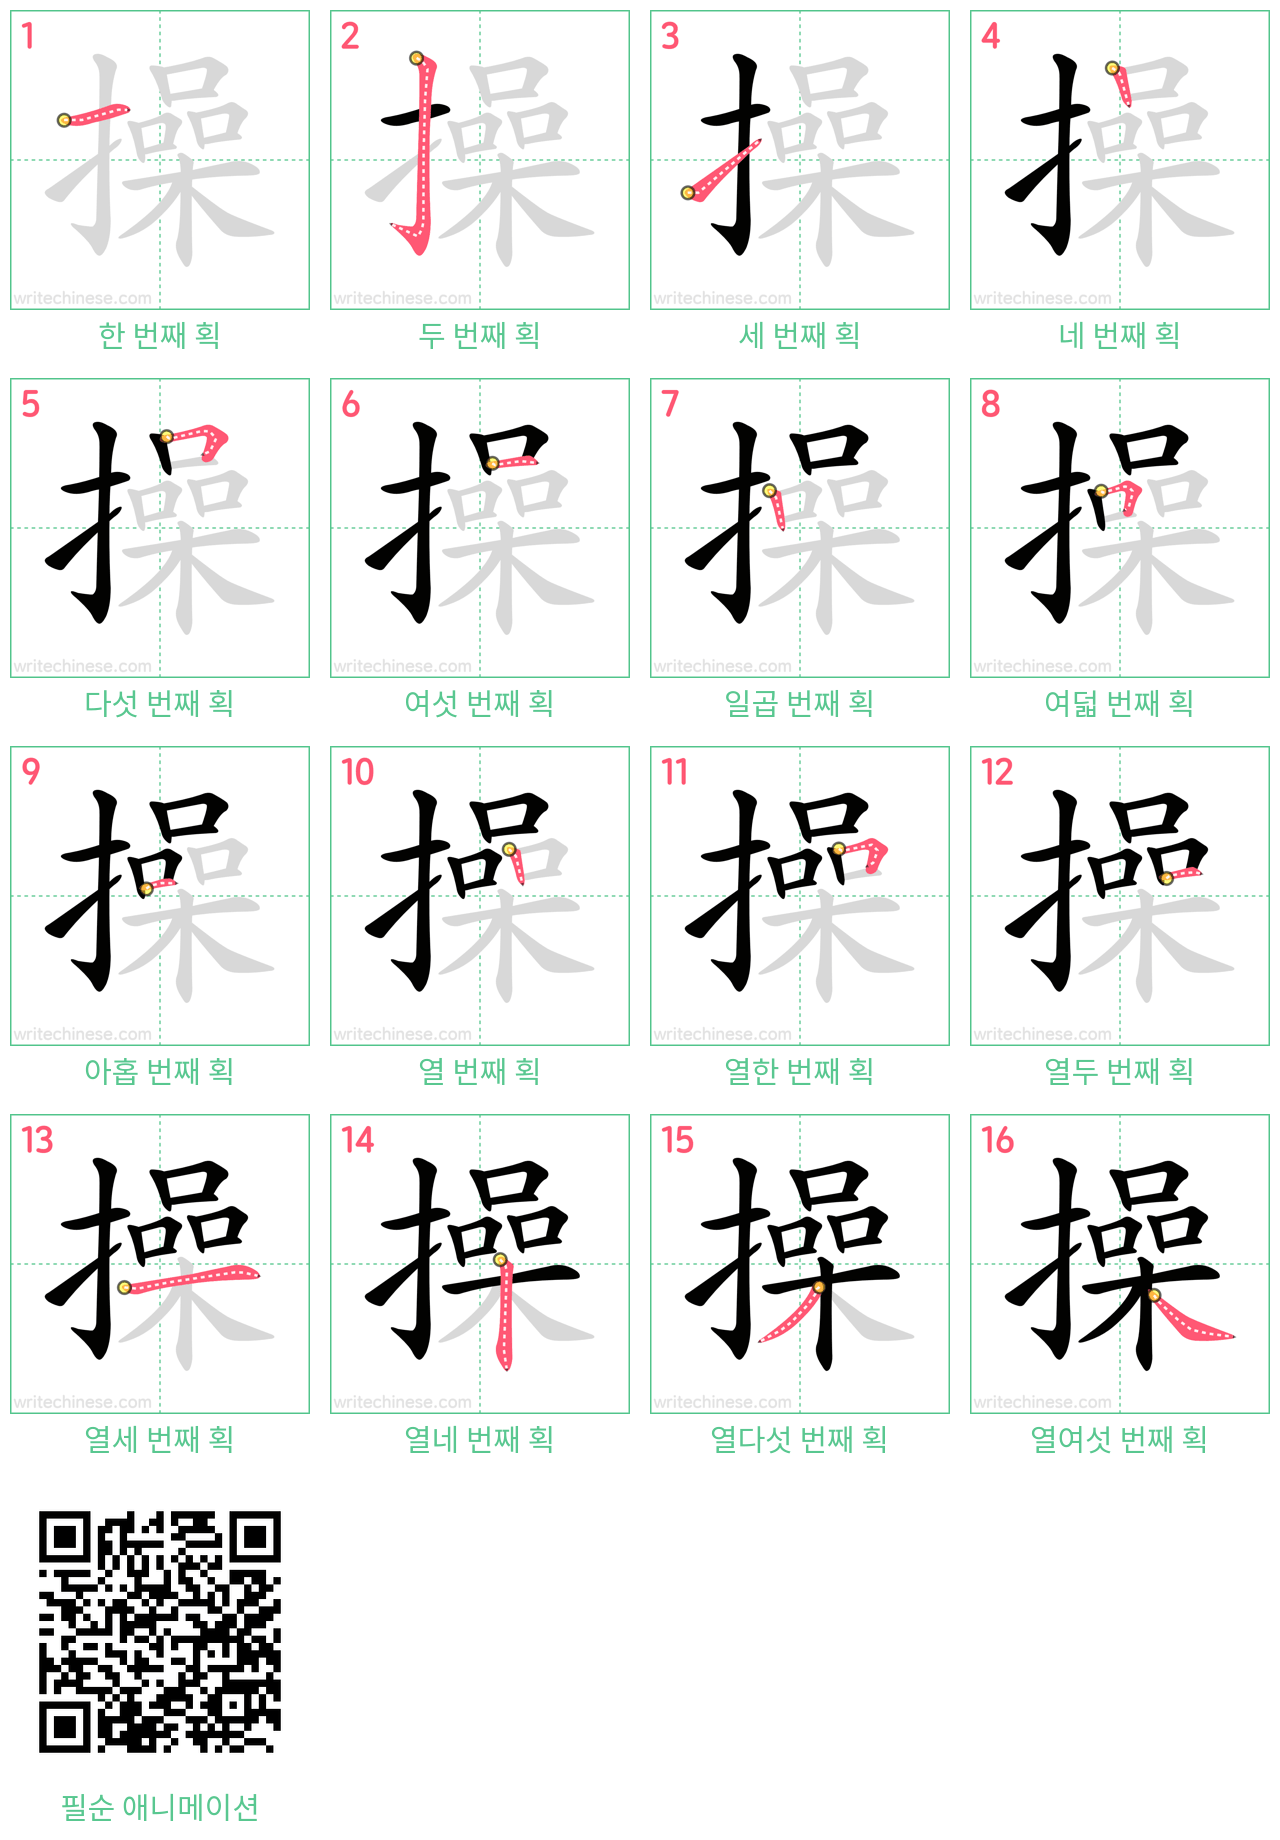 操 step-by-step stroke order diagrams